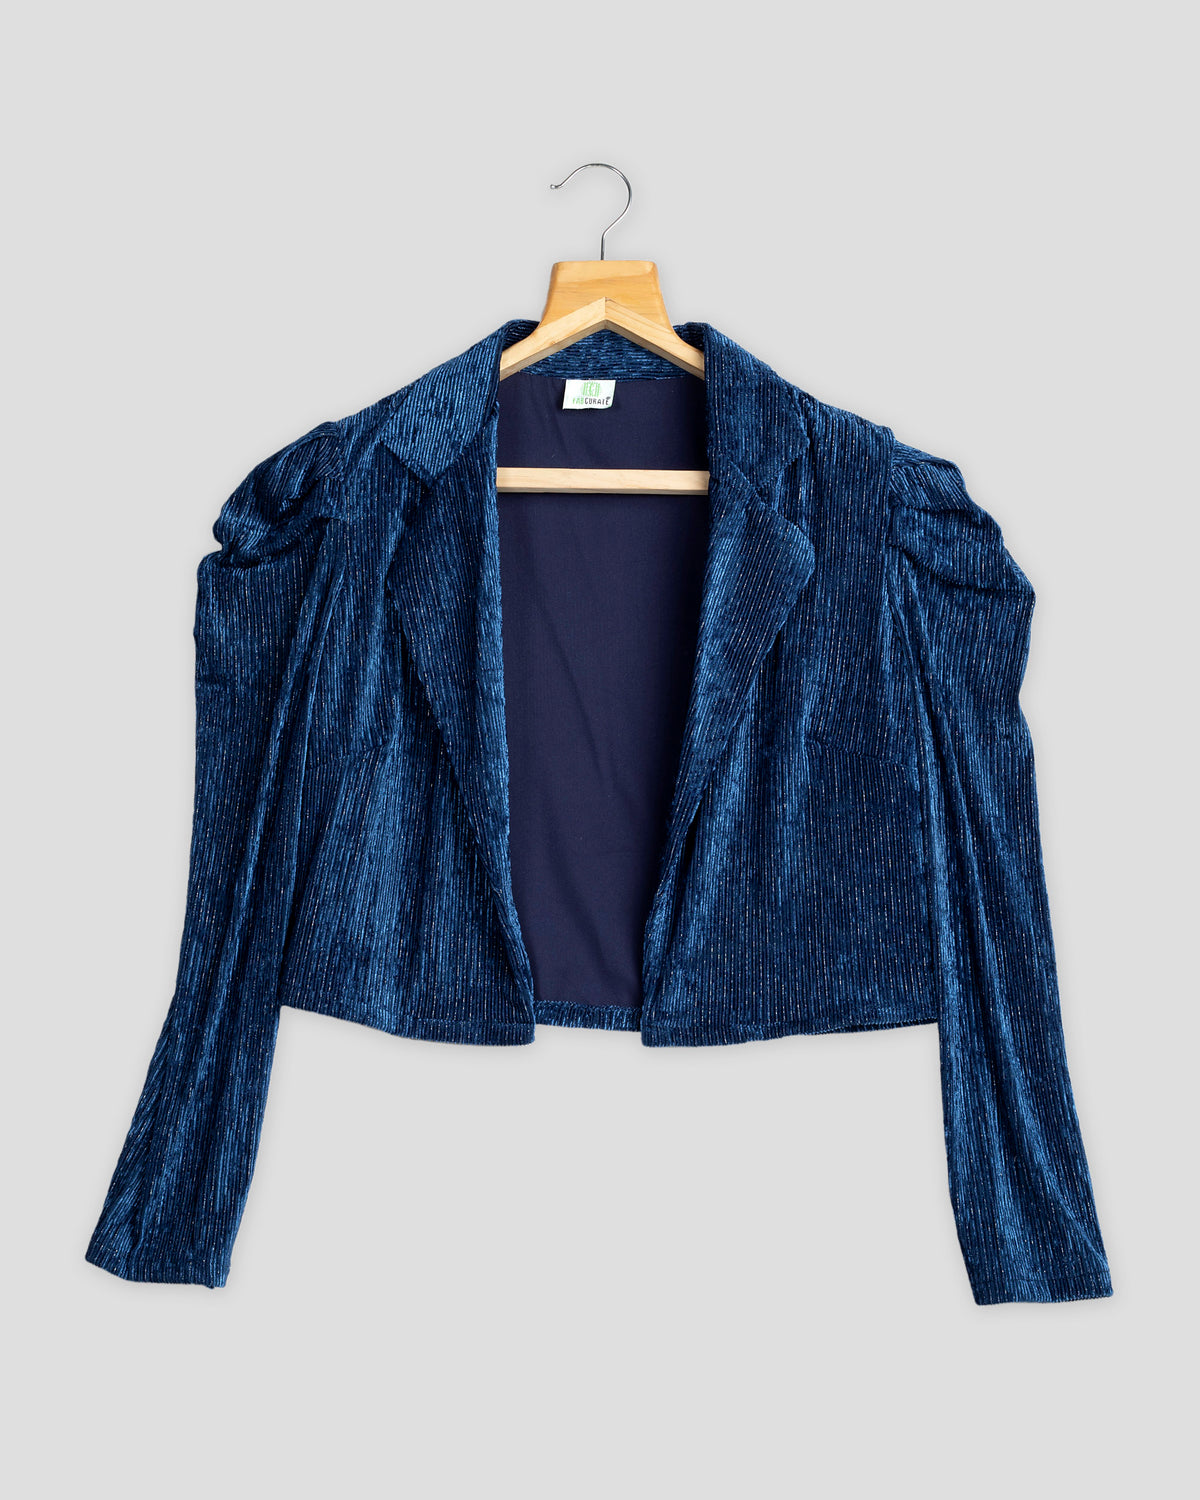 Velvet Jacket for Women - Buy Stylish Velvet Blazer at Best Price